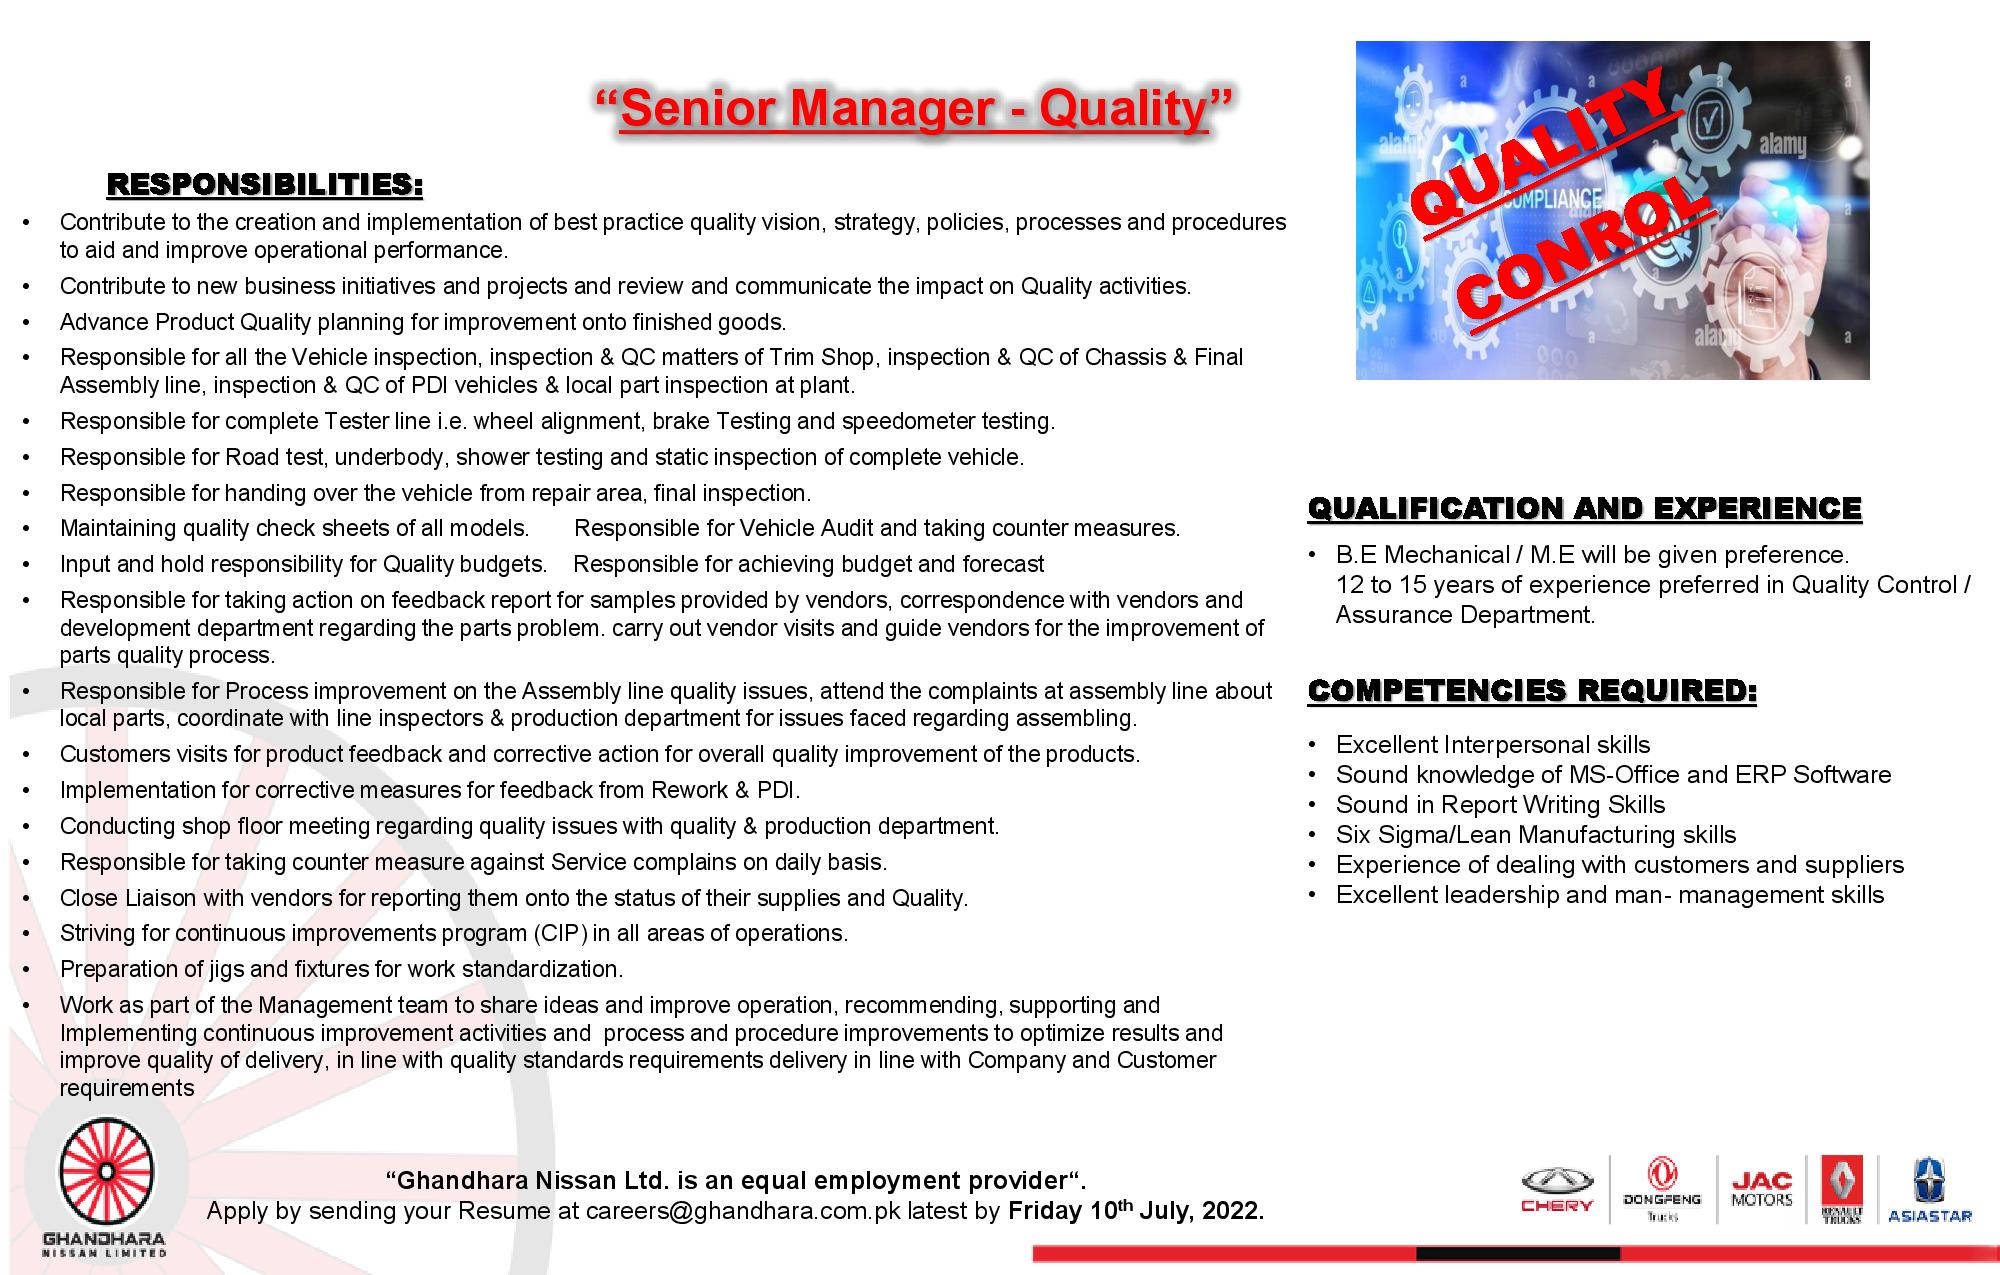 Ghandhara Nissan Ltd. Jobs For Senior Manager - Quality